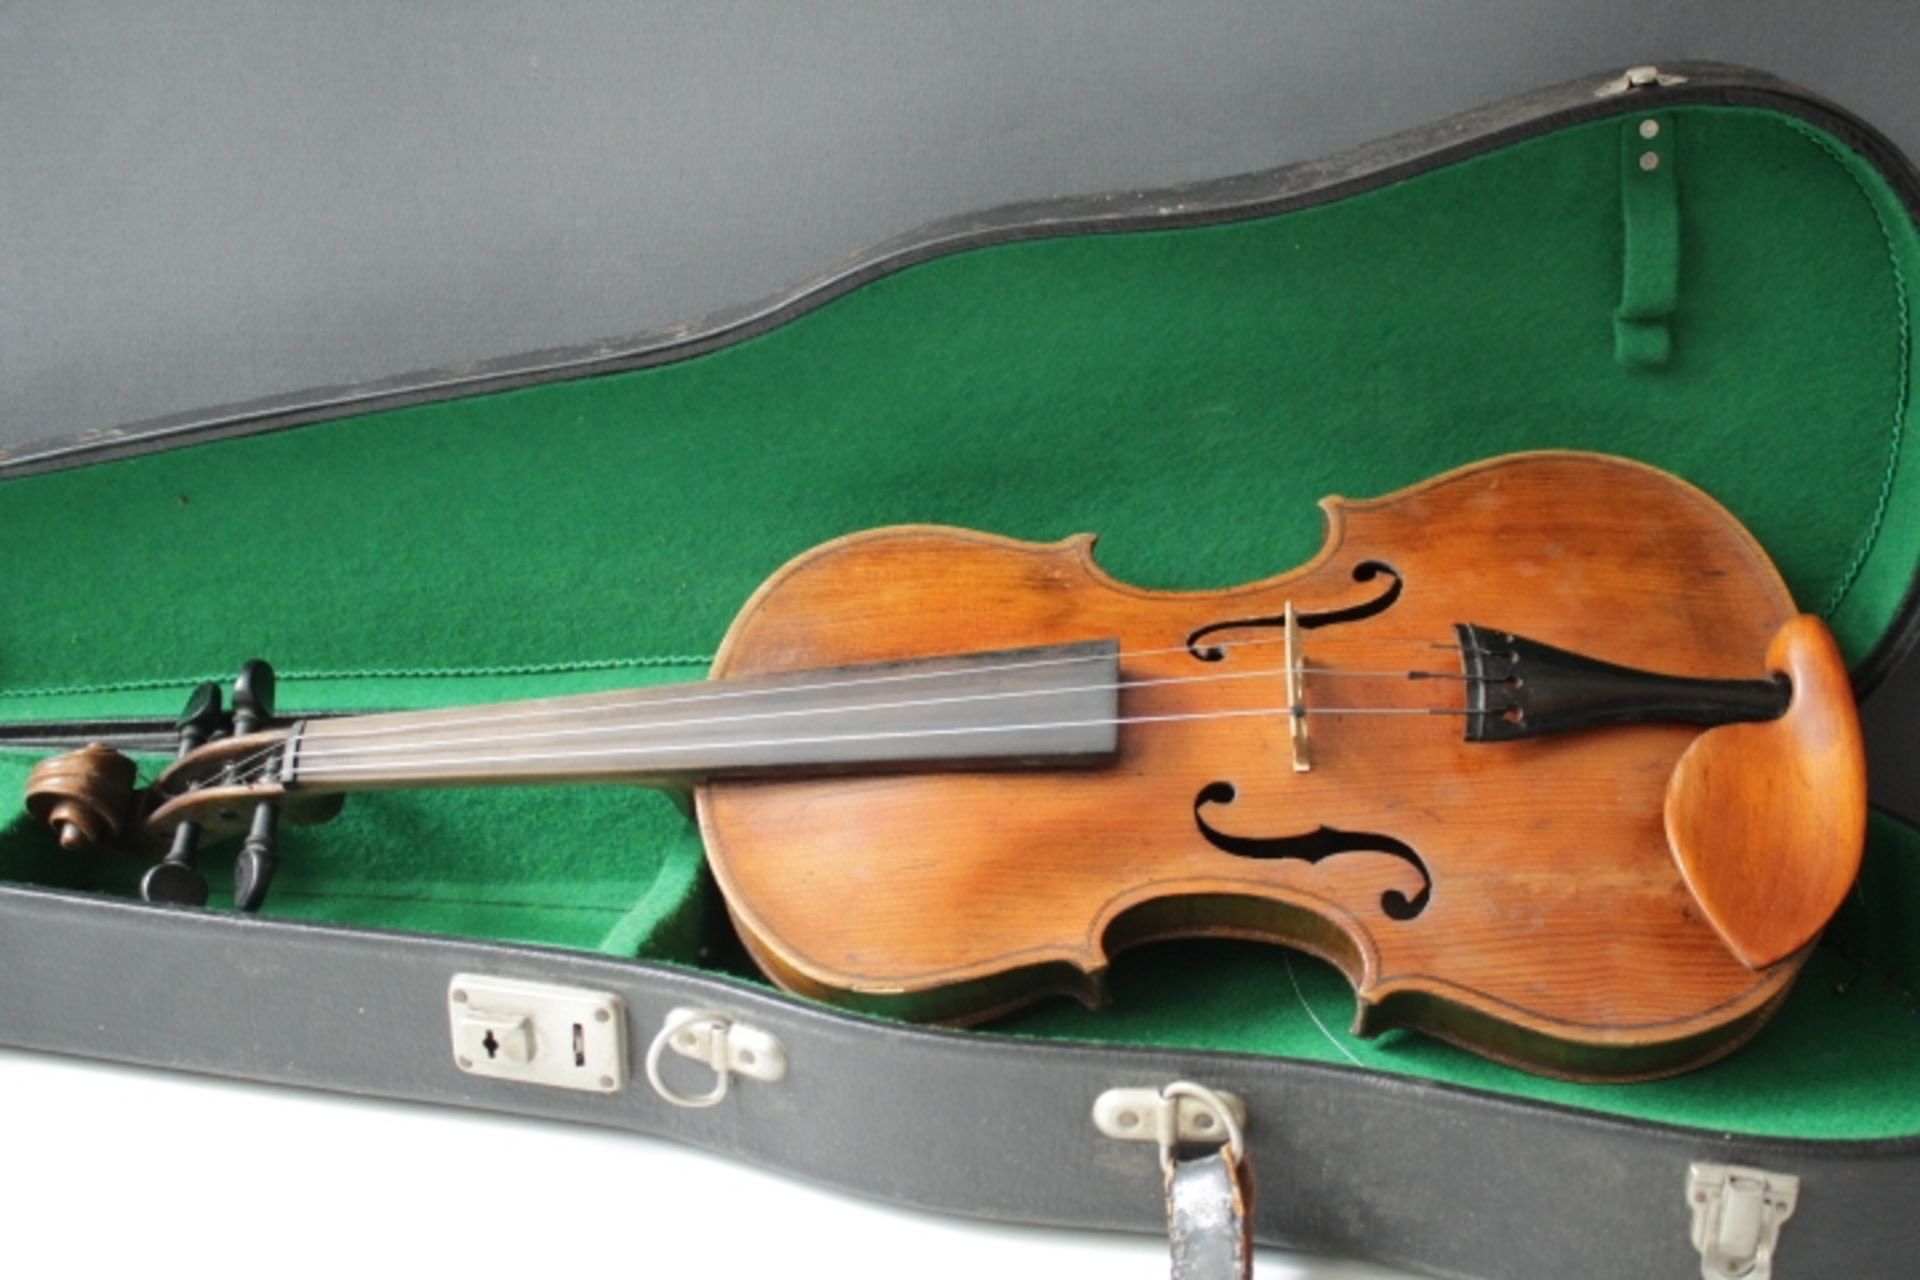 Violine im Koffer